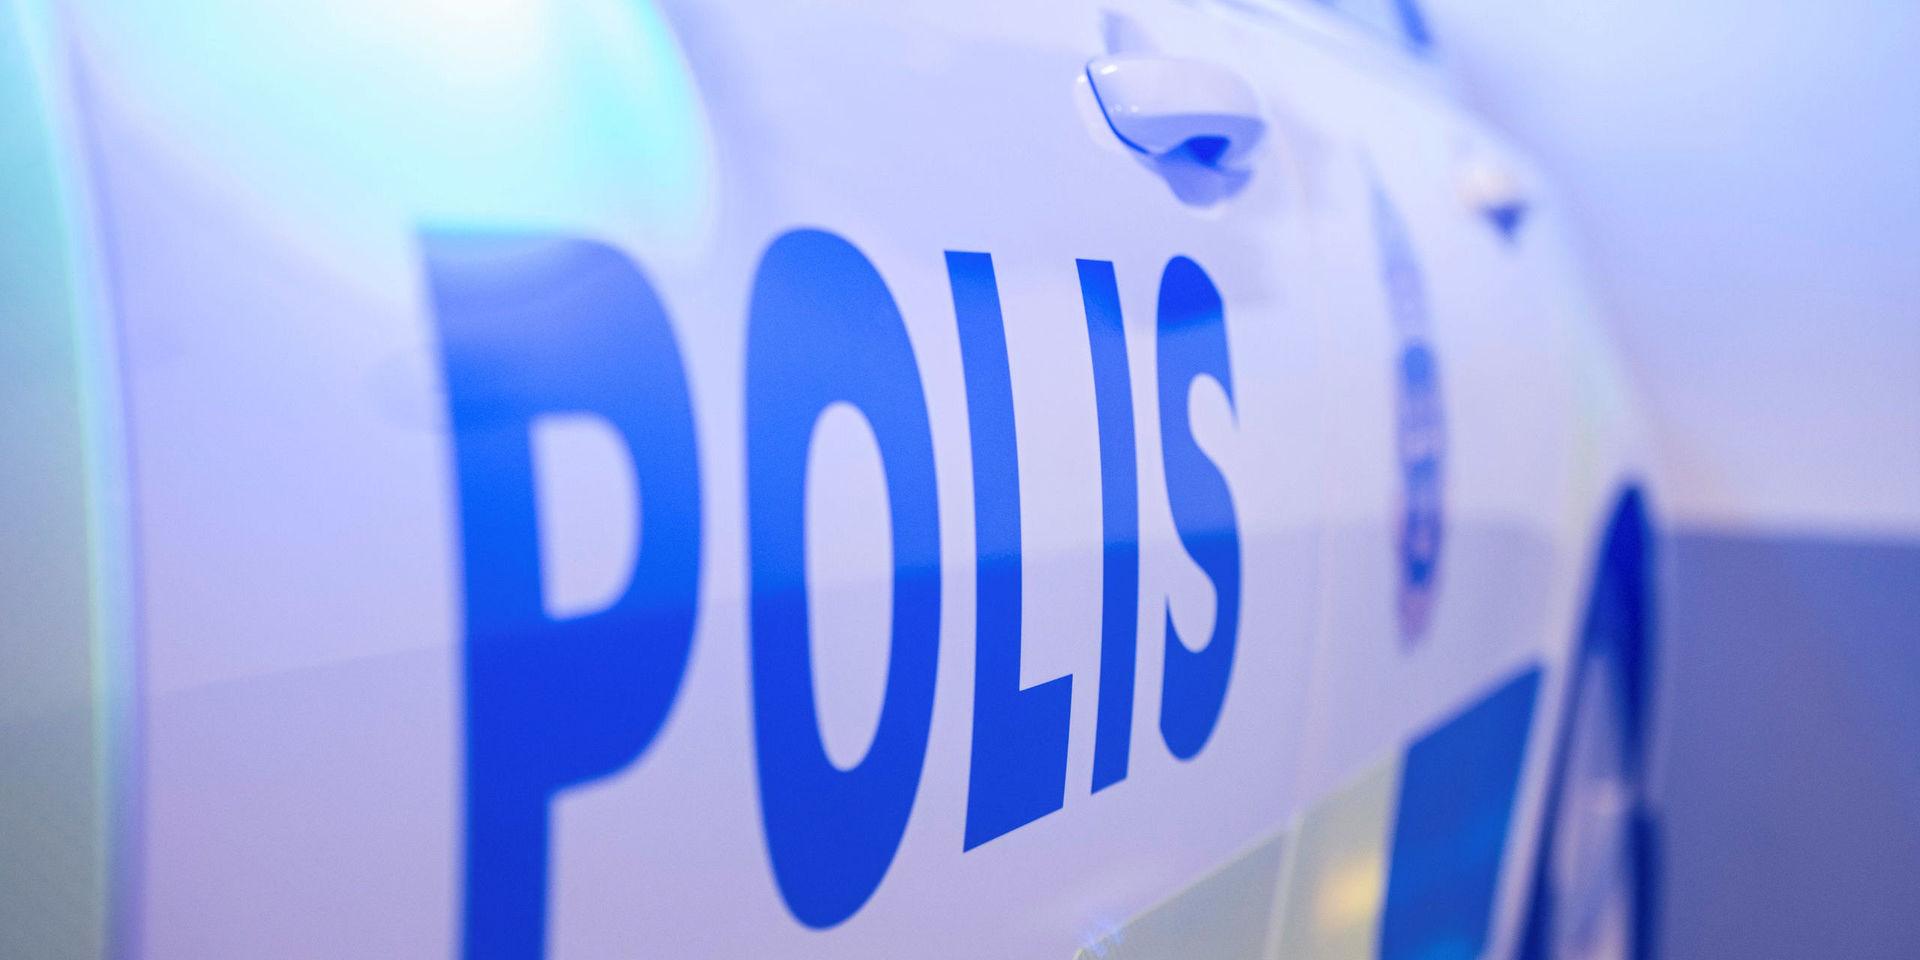 En villa i Forsåker har fått inbrott. 